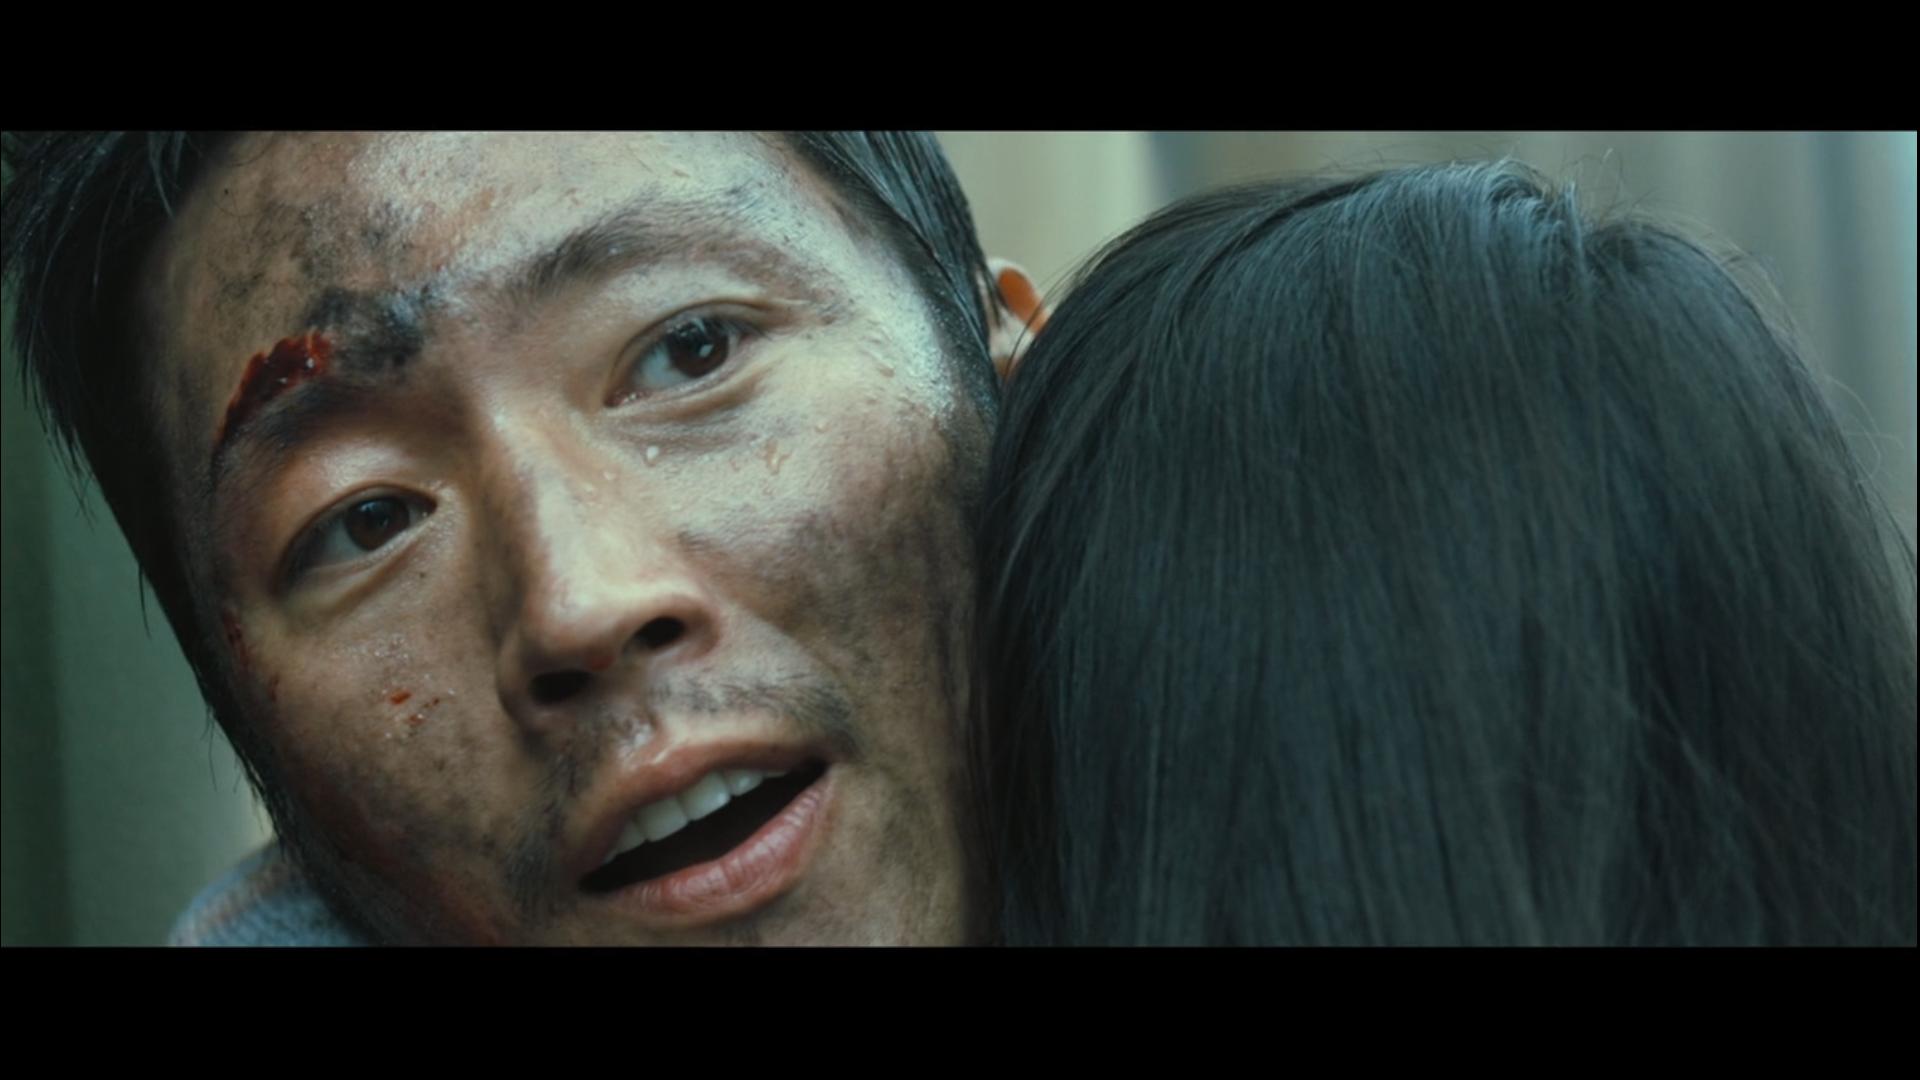 这部电影看哭了。。。。韩国电影“流感”